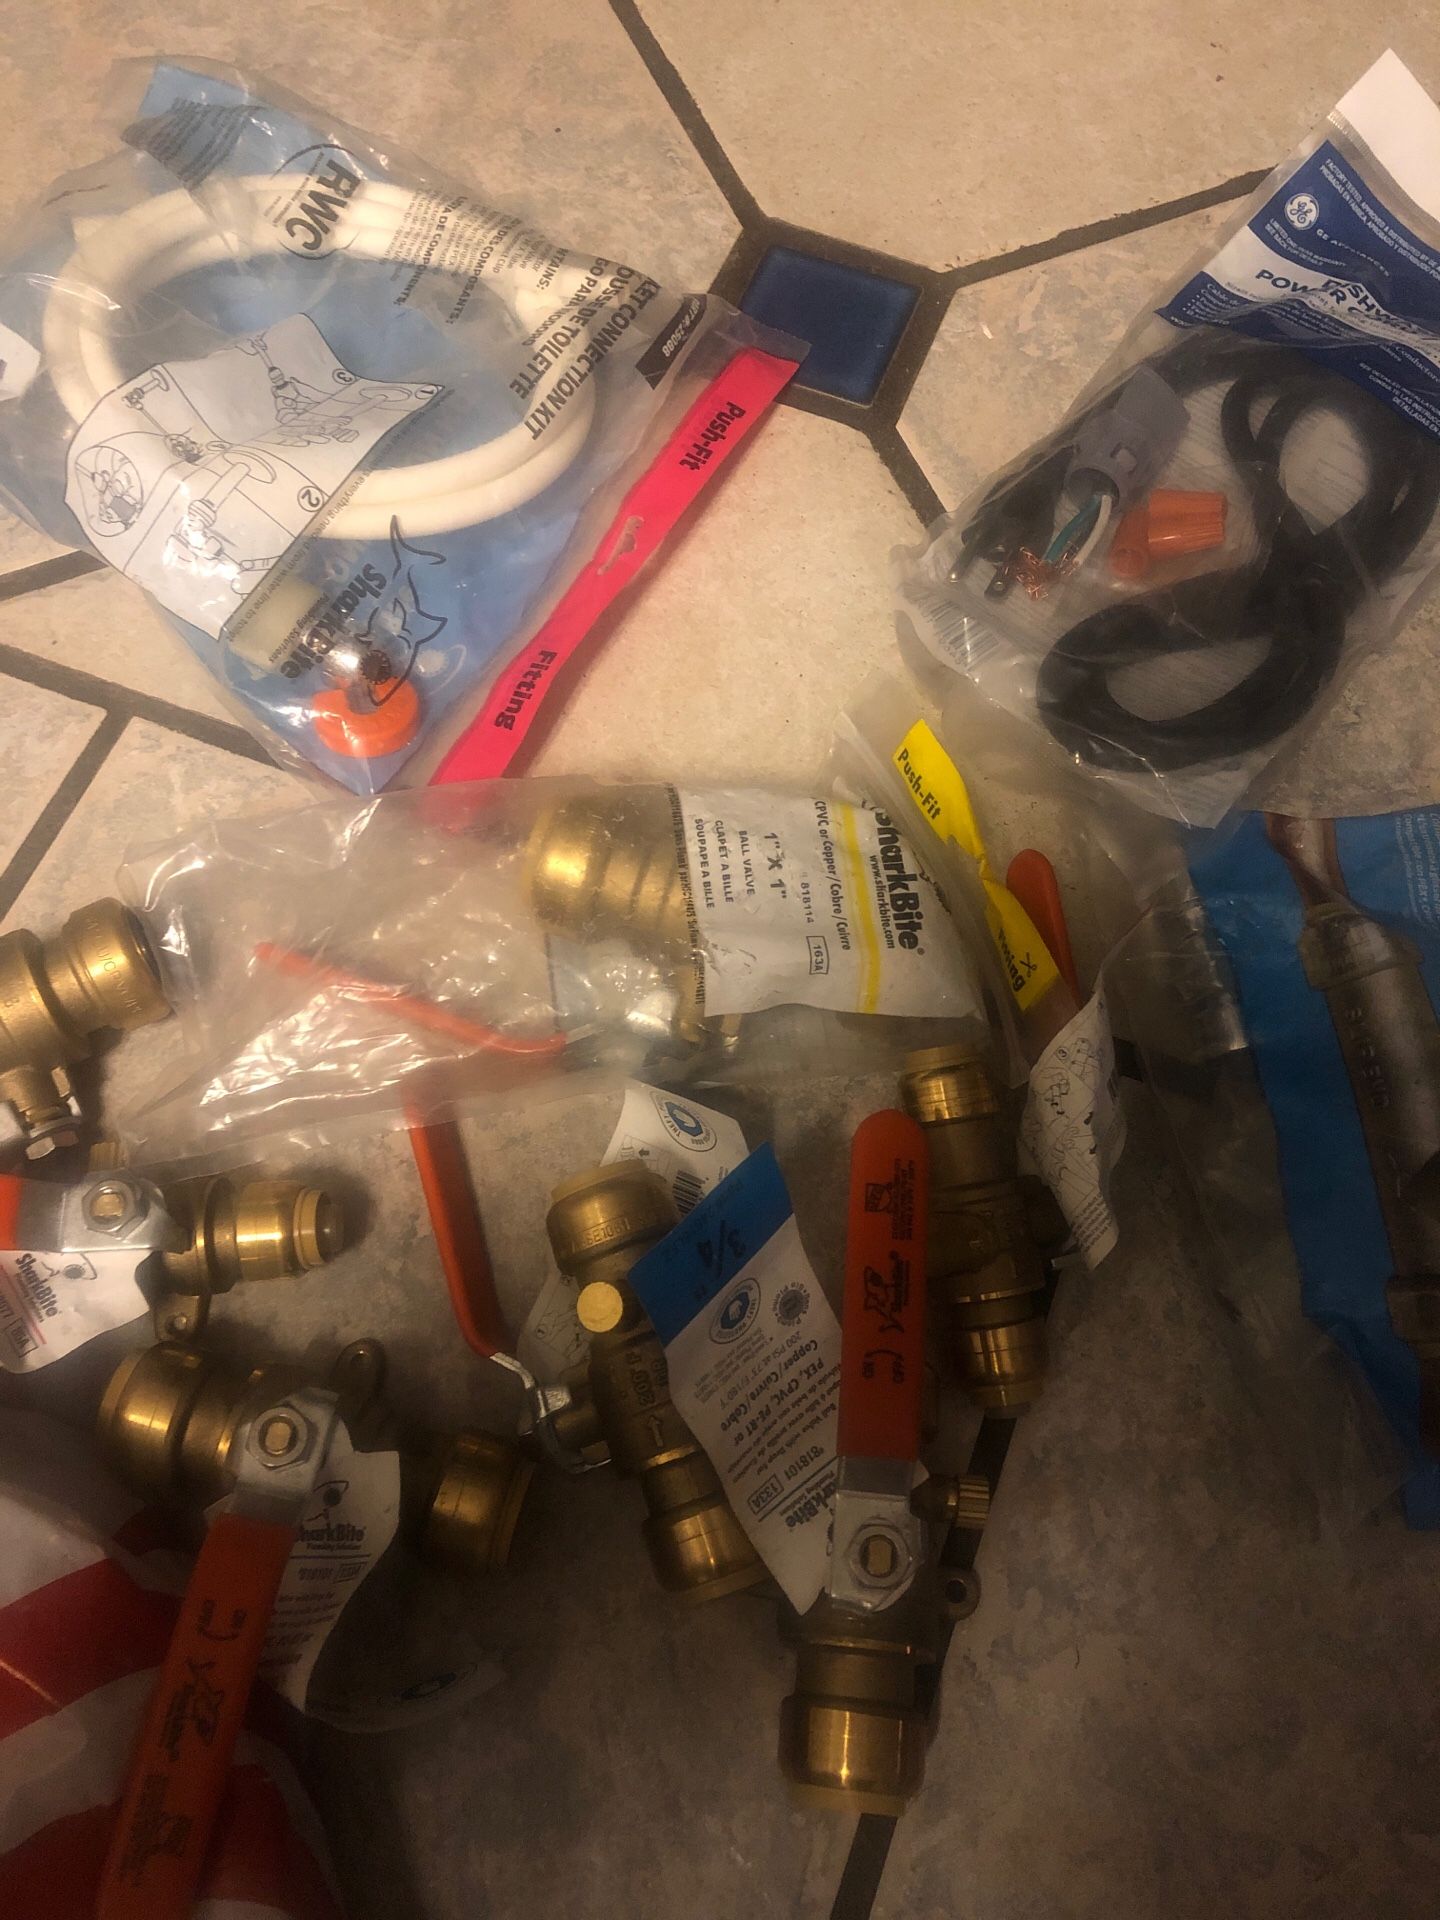 Shark bite plumbing Asst. copper ball valves and a few connection kits